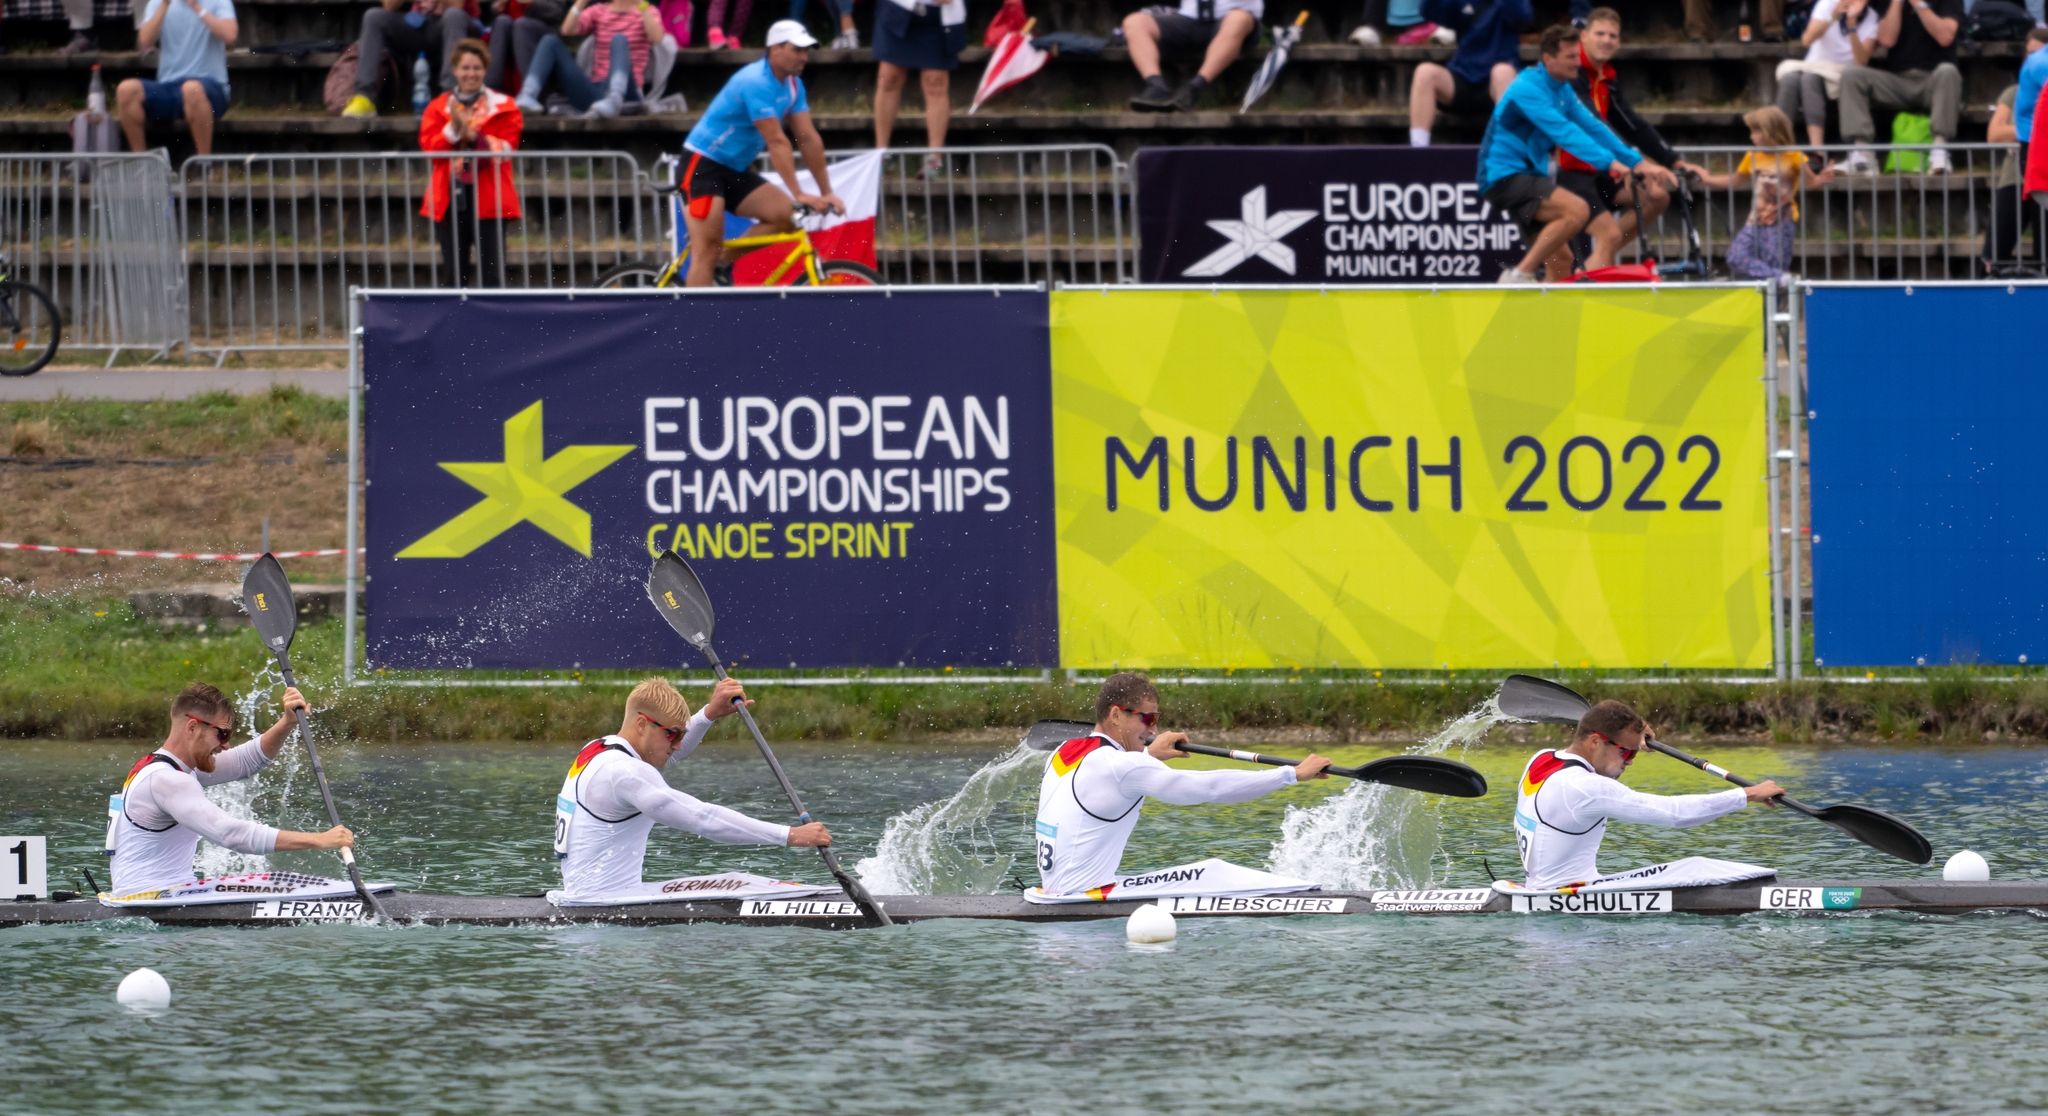 Auf das Münchner Multi-Sport-Event im vergangenen Jahr folgen nun die Europaspiele in Krakau.